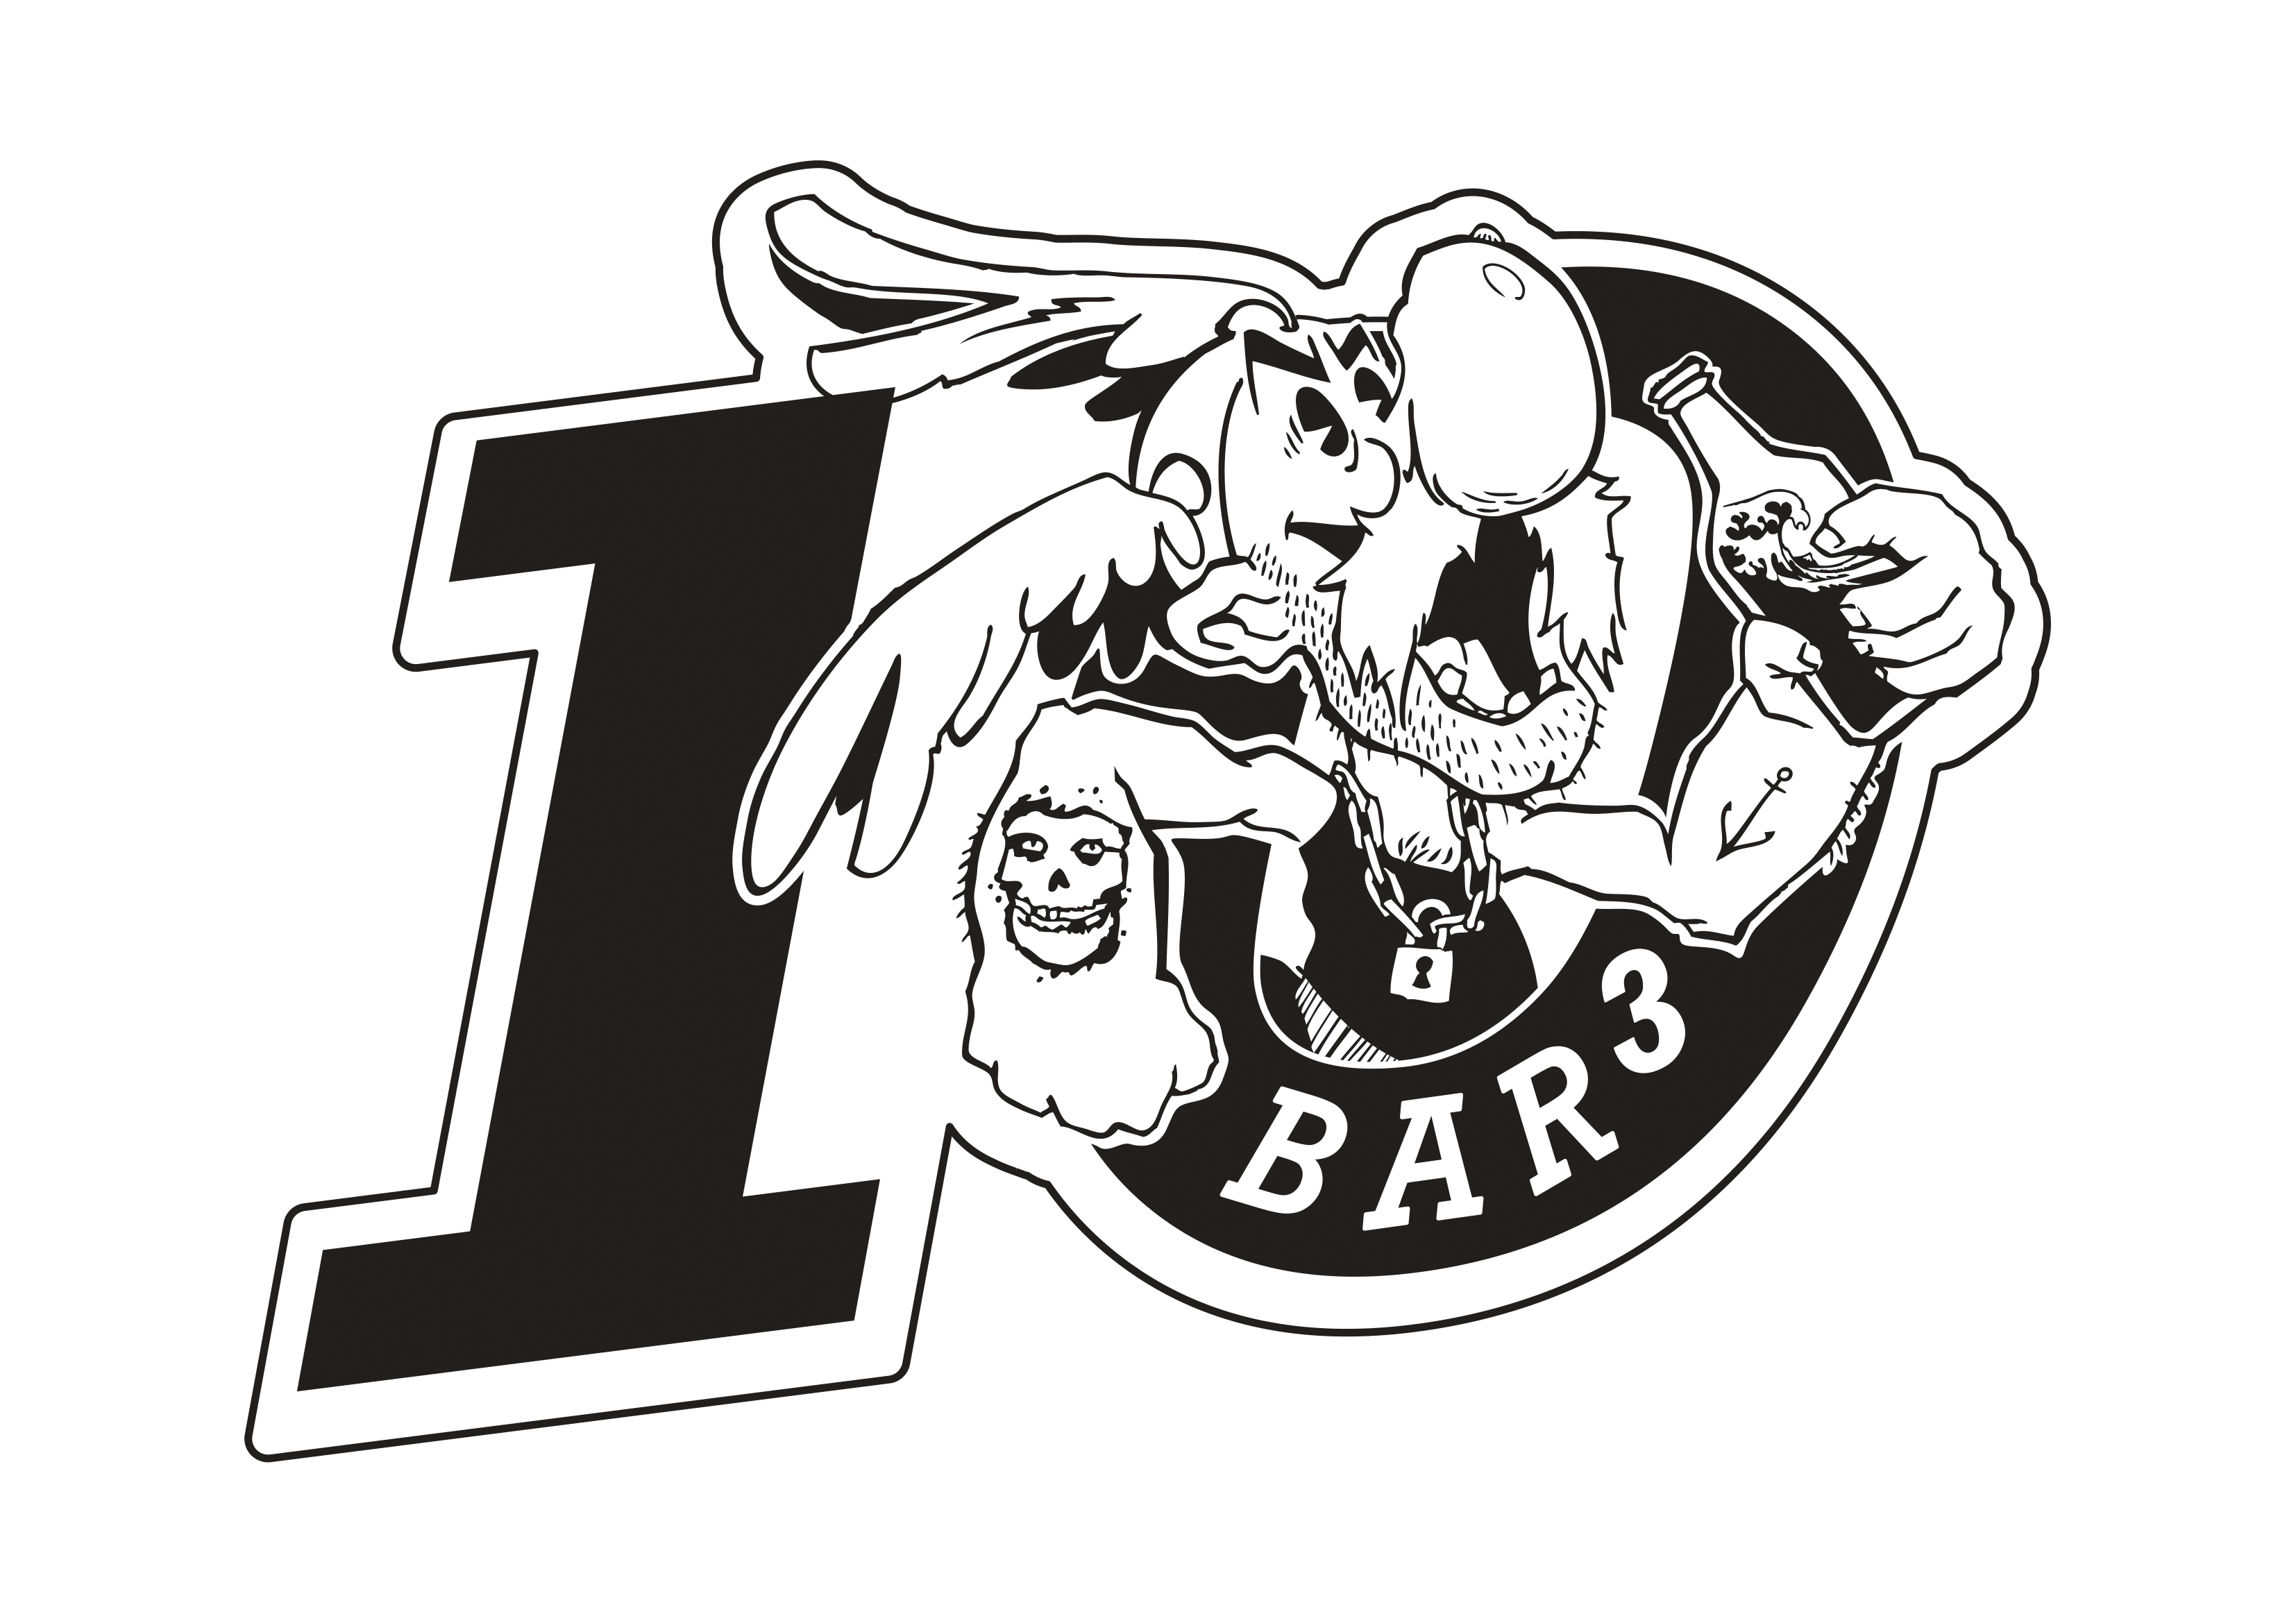 Bar3